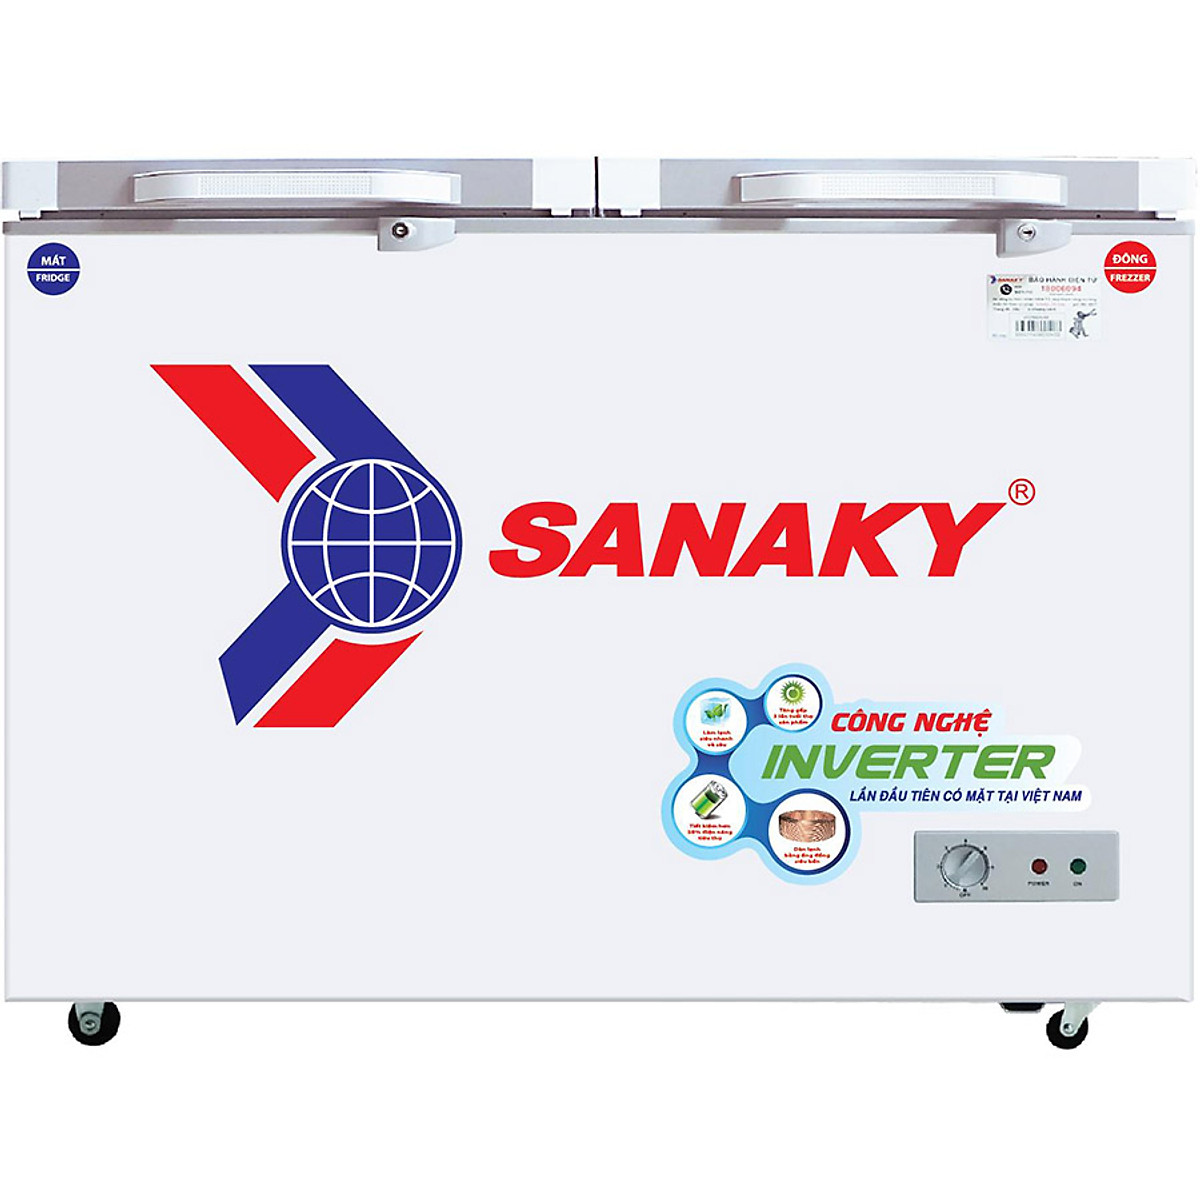 Tủ Đông Kính Cường Lực Inverter Sanaky VH-3699W4K (260L) - Xám - Hàng Chính Hãng - Chỉ Giao tại HCM